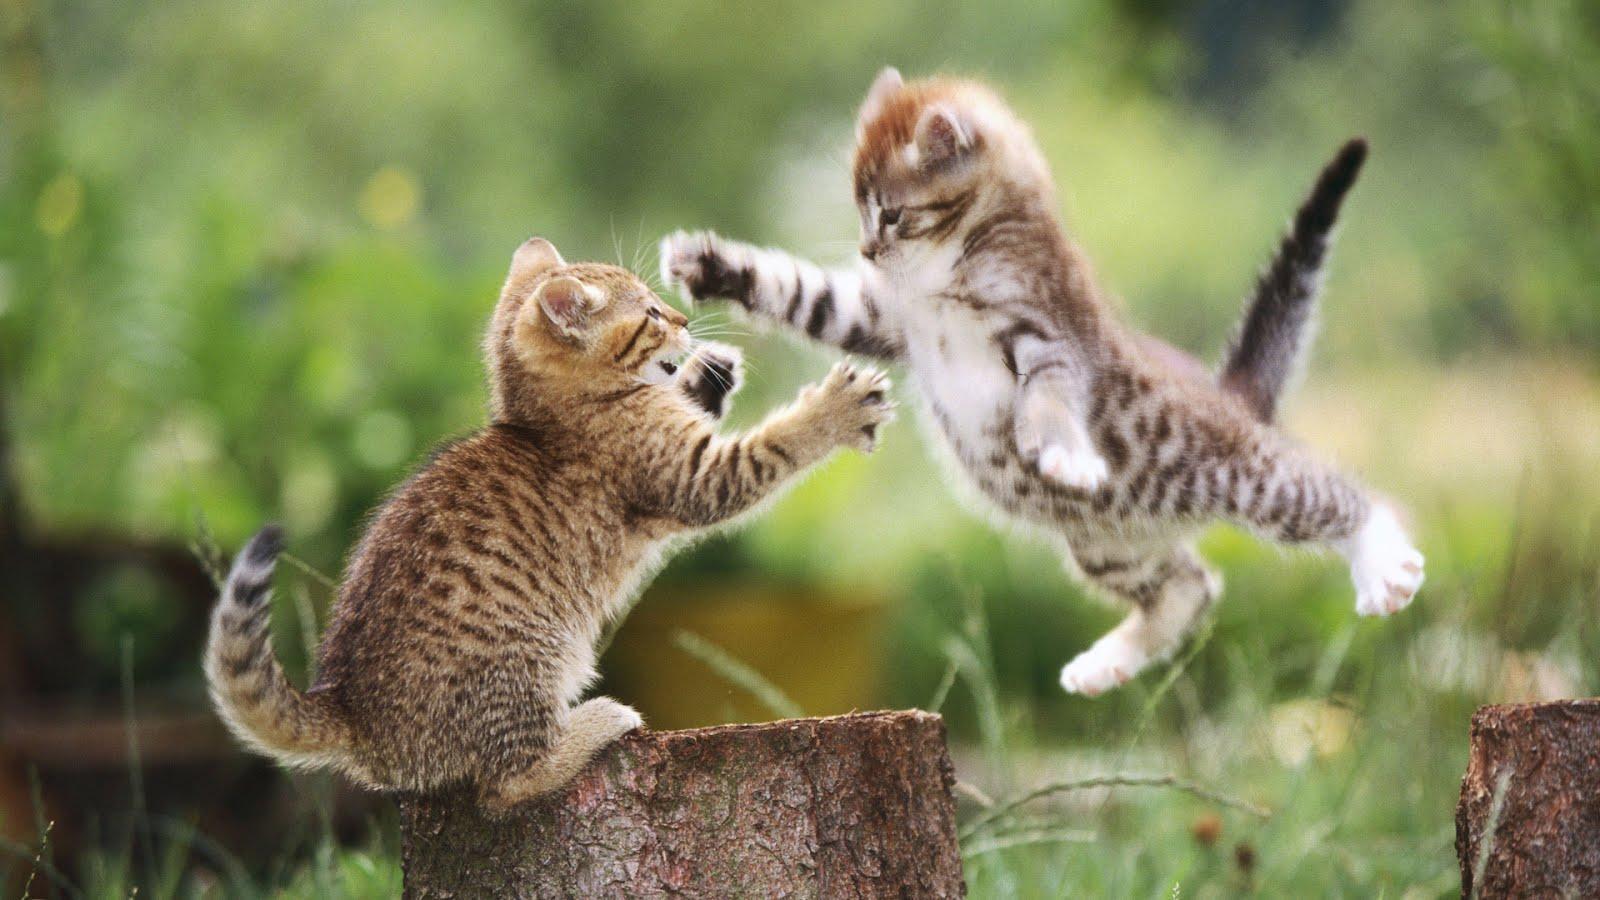 Download Cute Funny Cat Desktop wallpaper Image